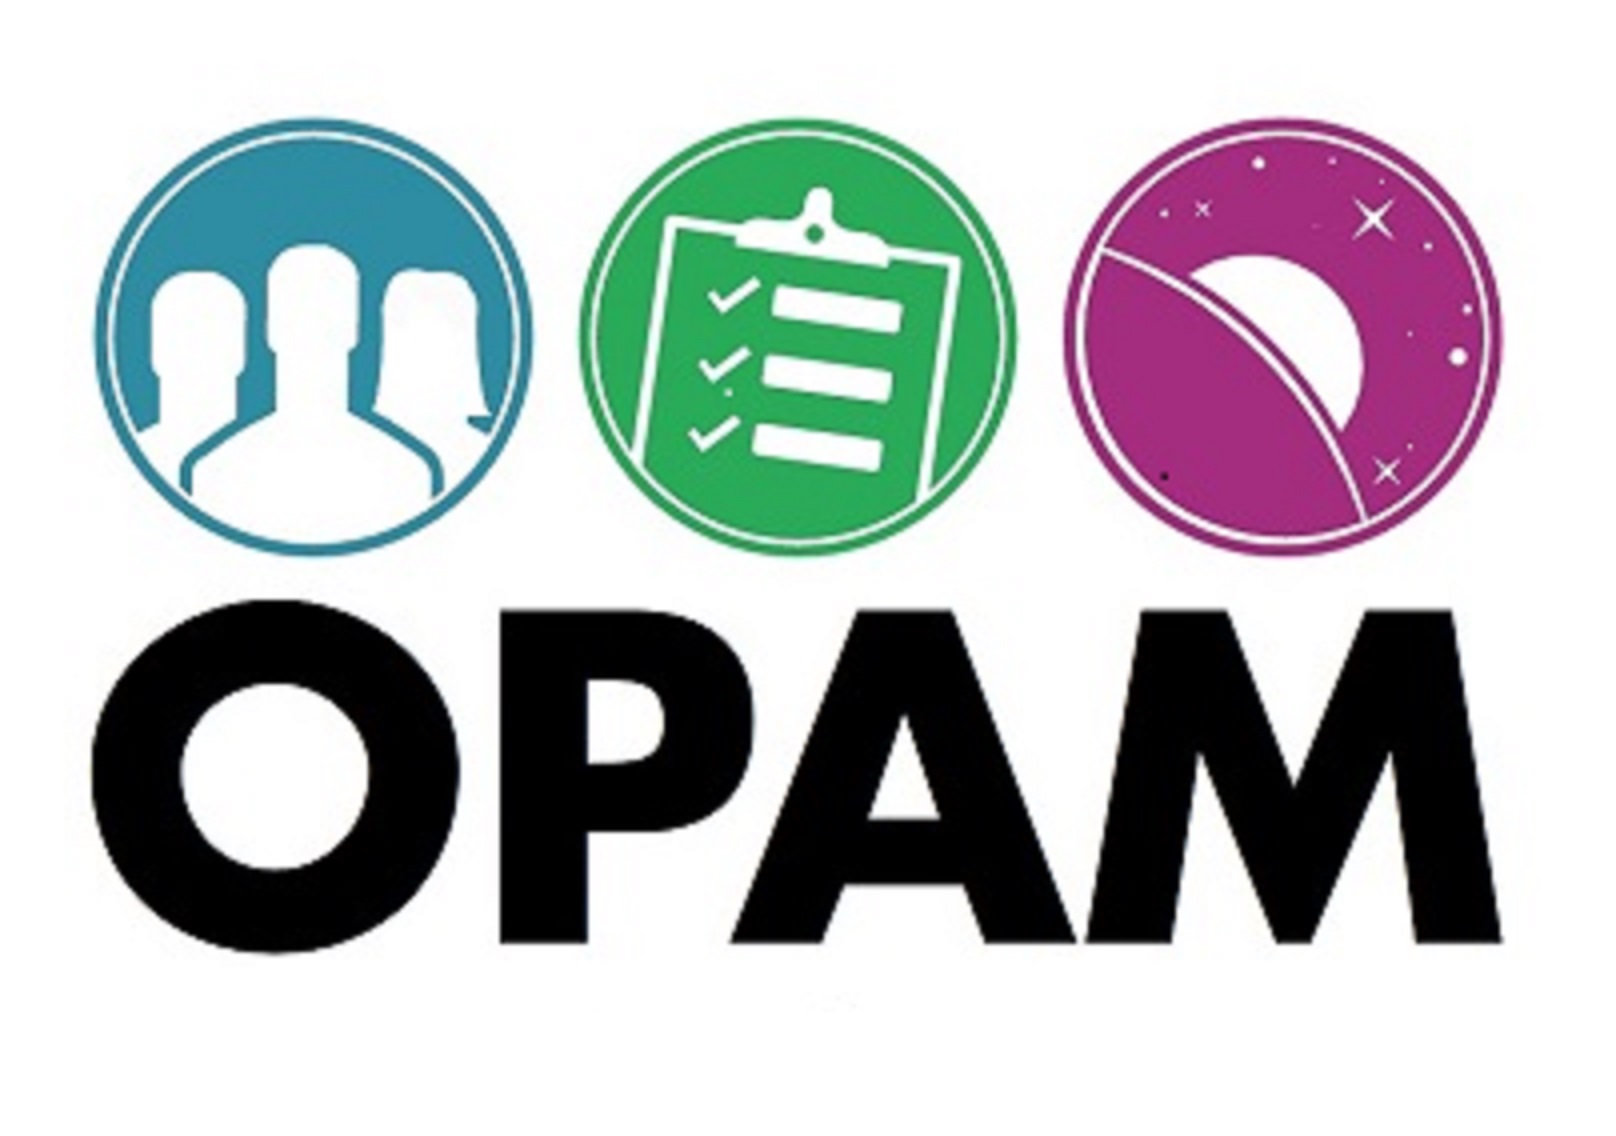 OPAM logo